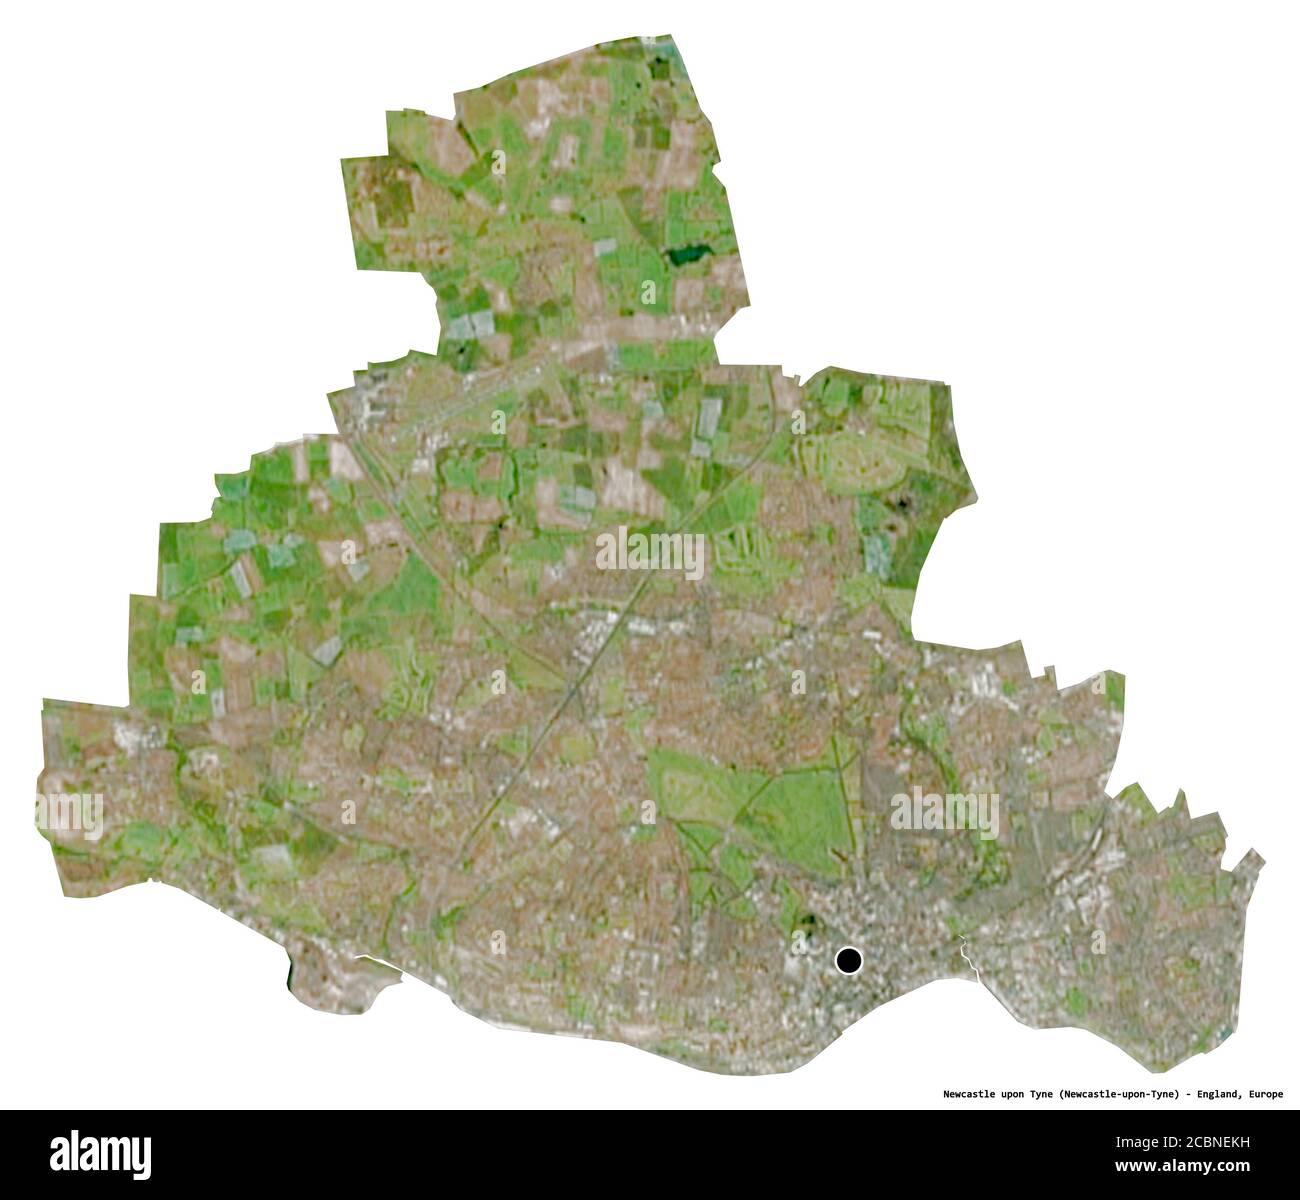 Forme de Newcastle upon Tyne, comté administratif d'Angleterre, avec sa capitale isolée sur fond blanc. Imagerie satellite. Rendu 3D Banque D'Images